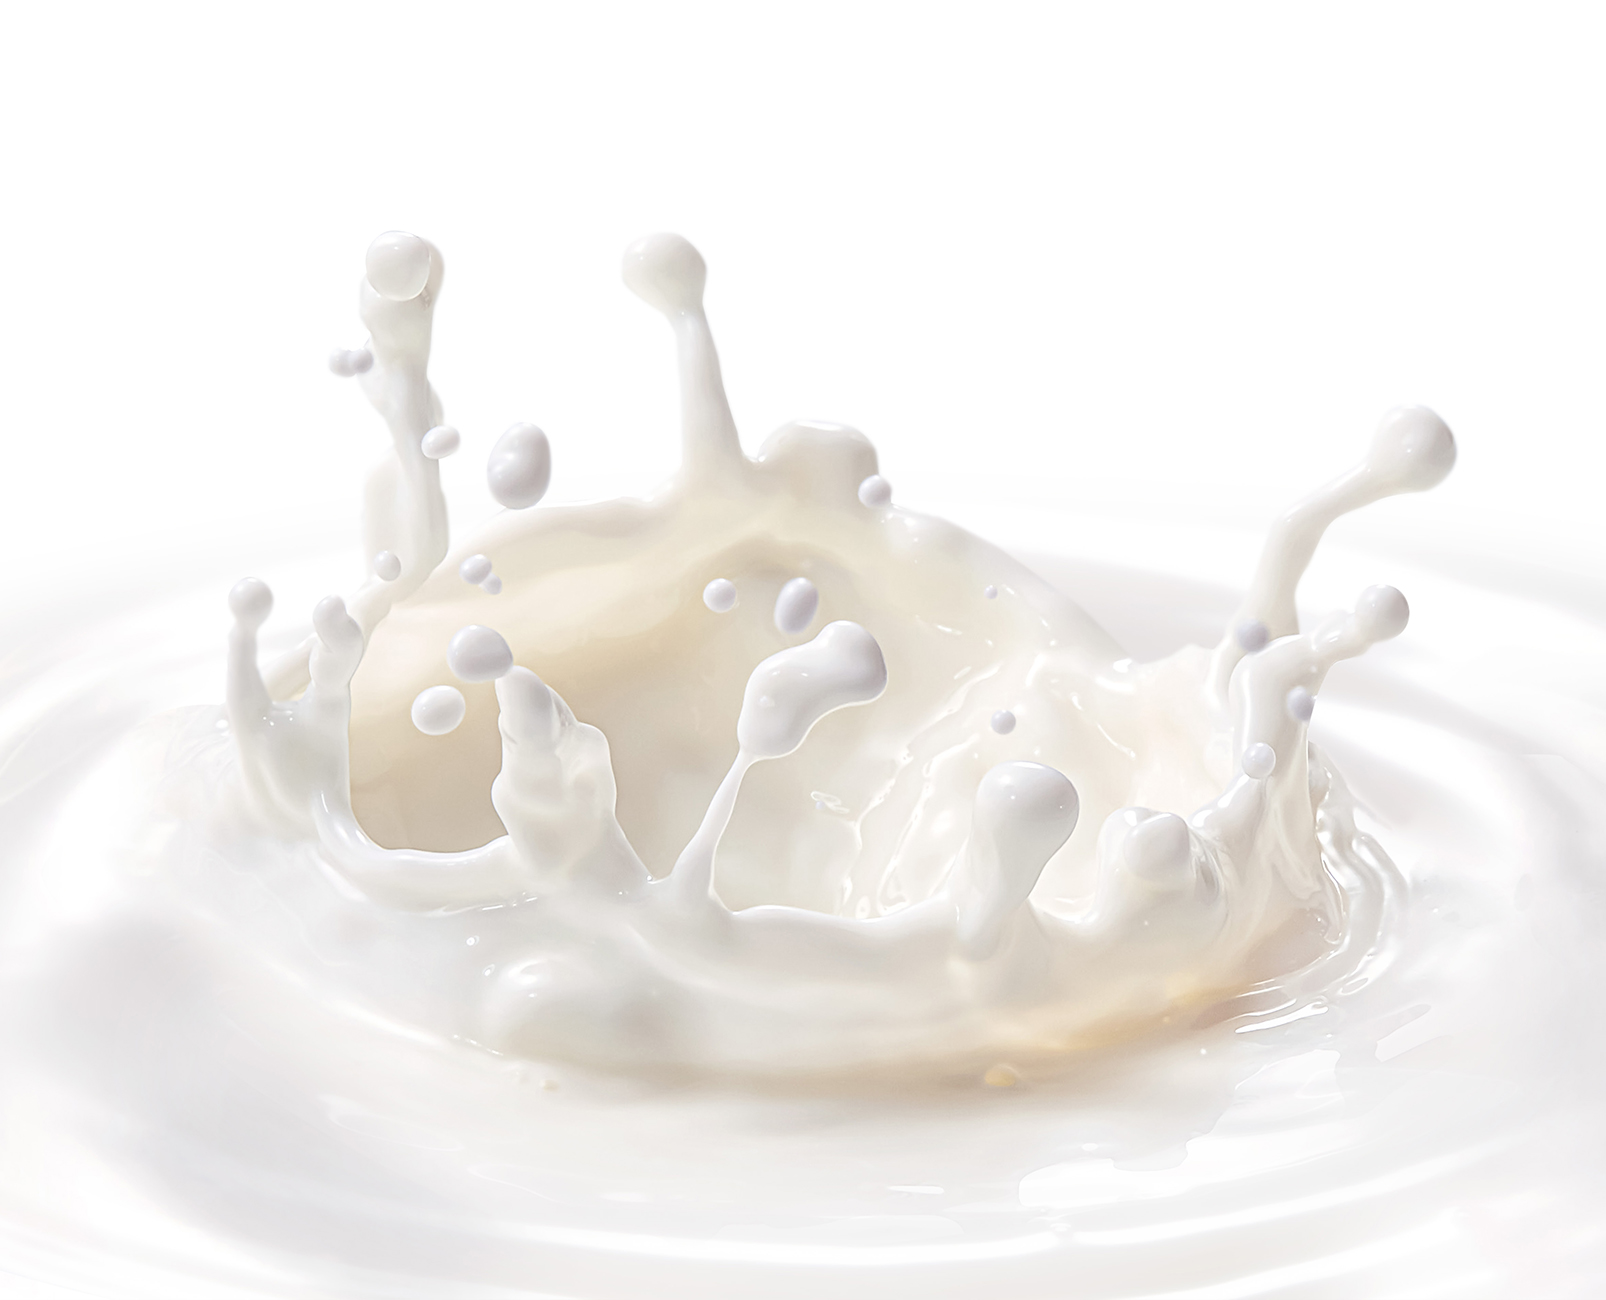 共に創る豊かな未来 ヤシマの牛乳イメージ画像